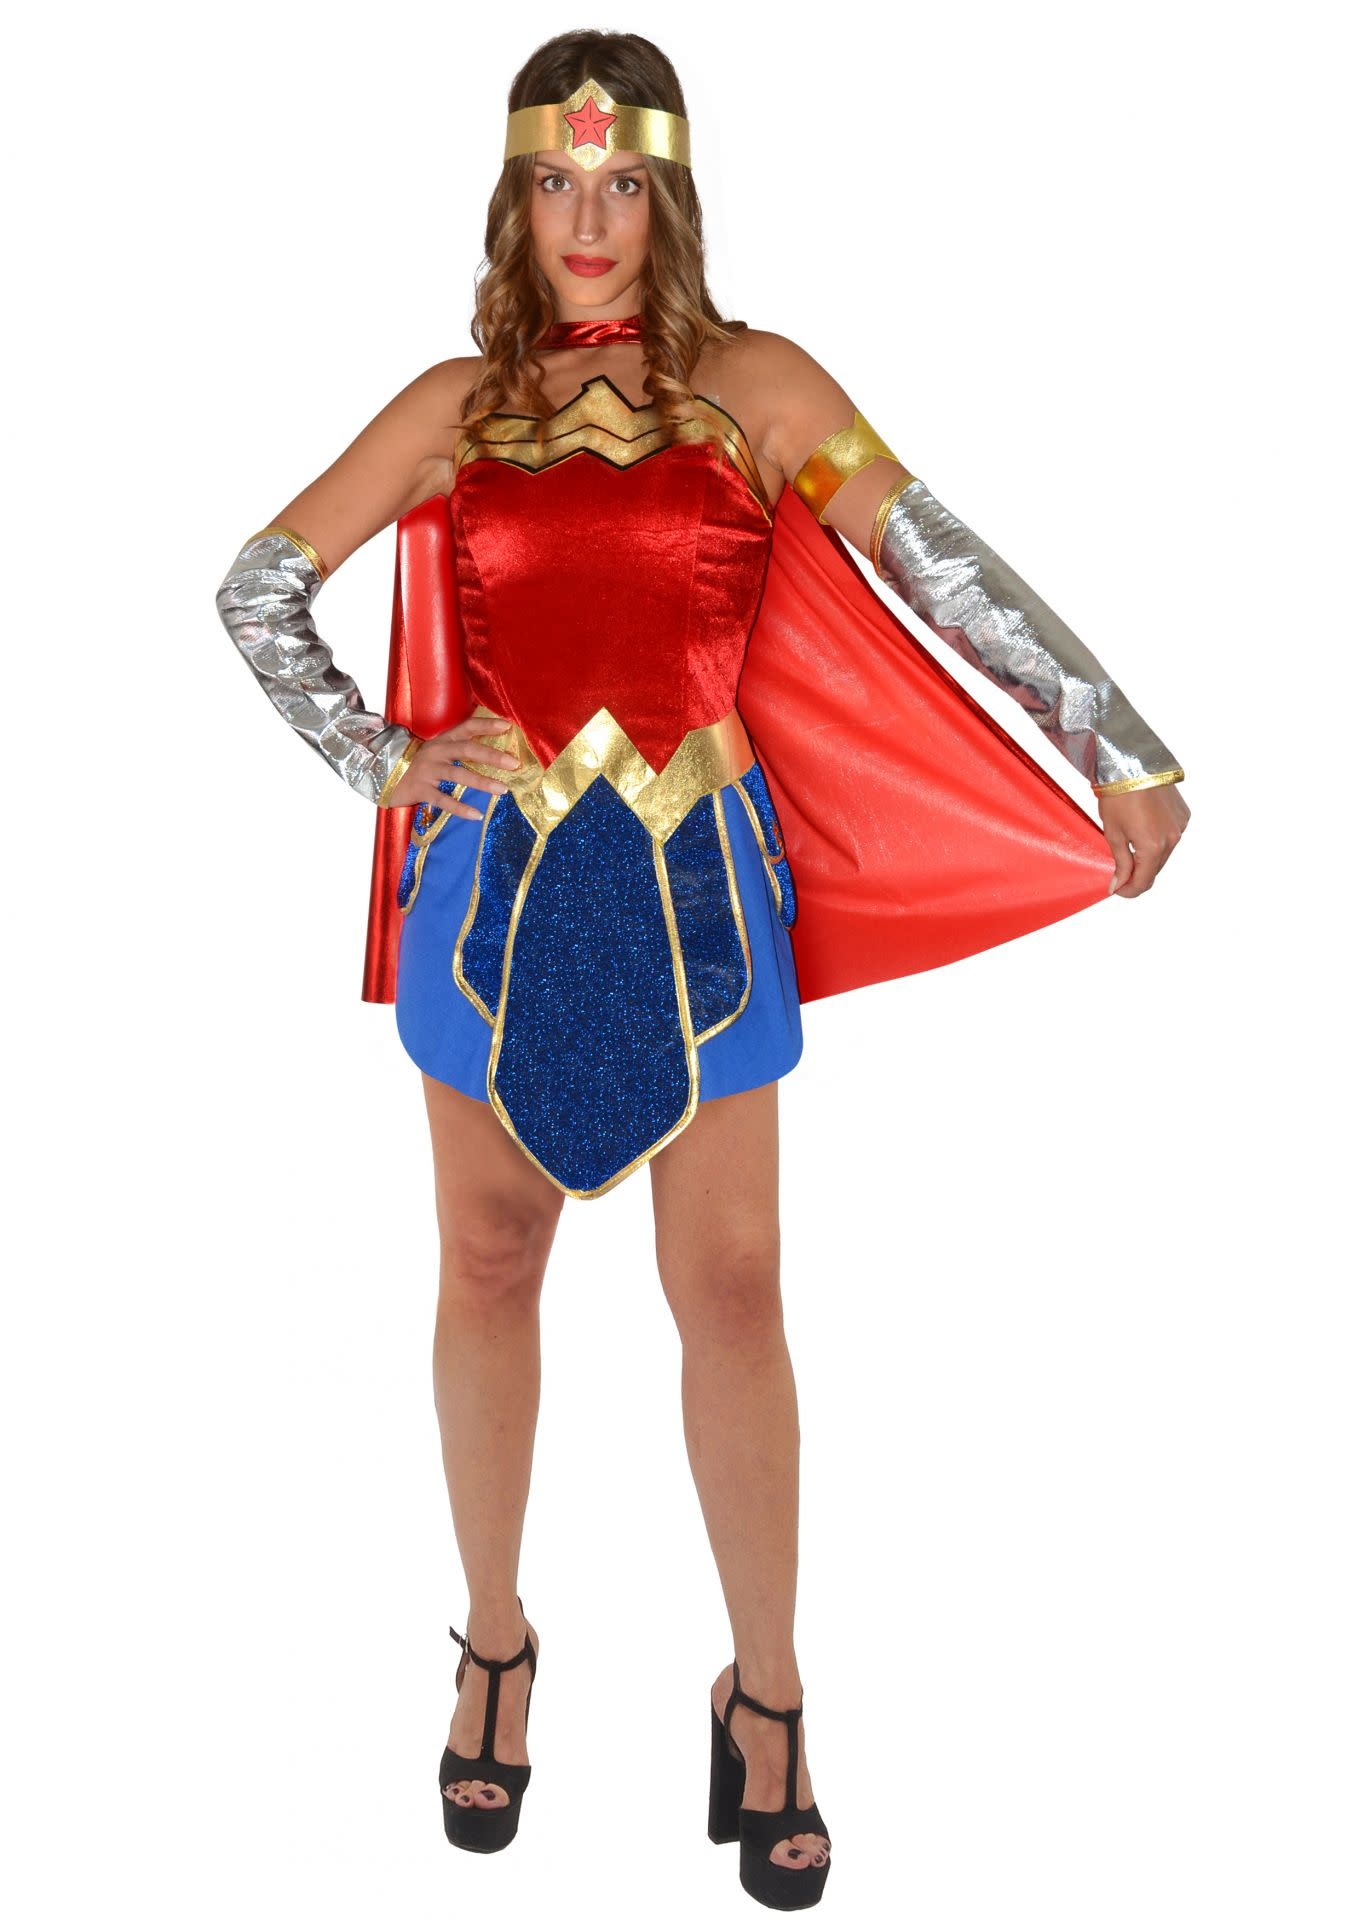 Wonder Woman Kostuum voor Dames - De verkleedzolder, voor al feestartikelen, accessoires, verhuur verkoop van kleding, feestkleding en kostuums voor uw themafeest of